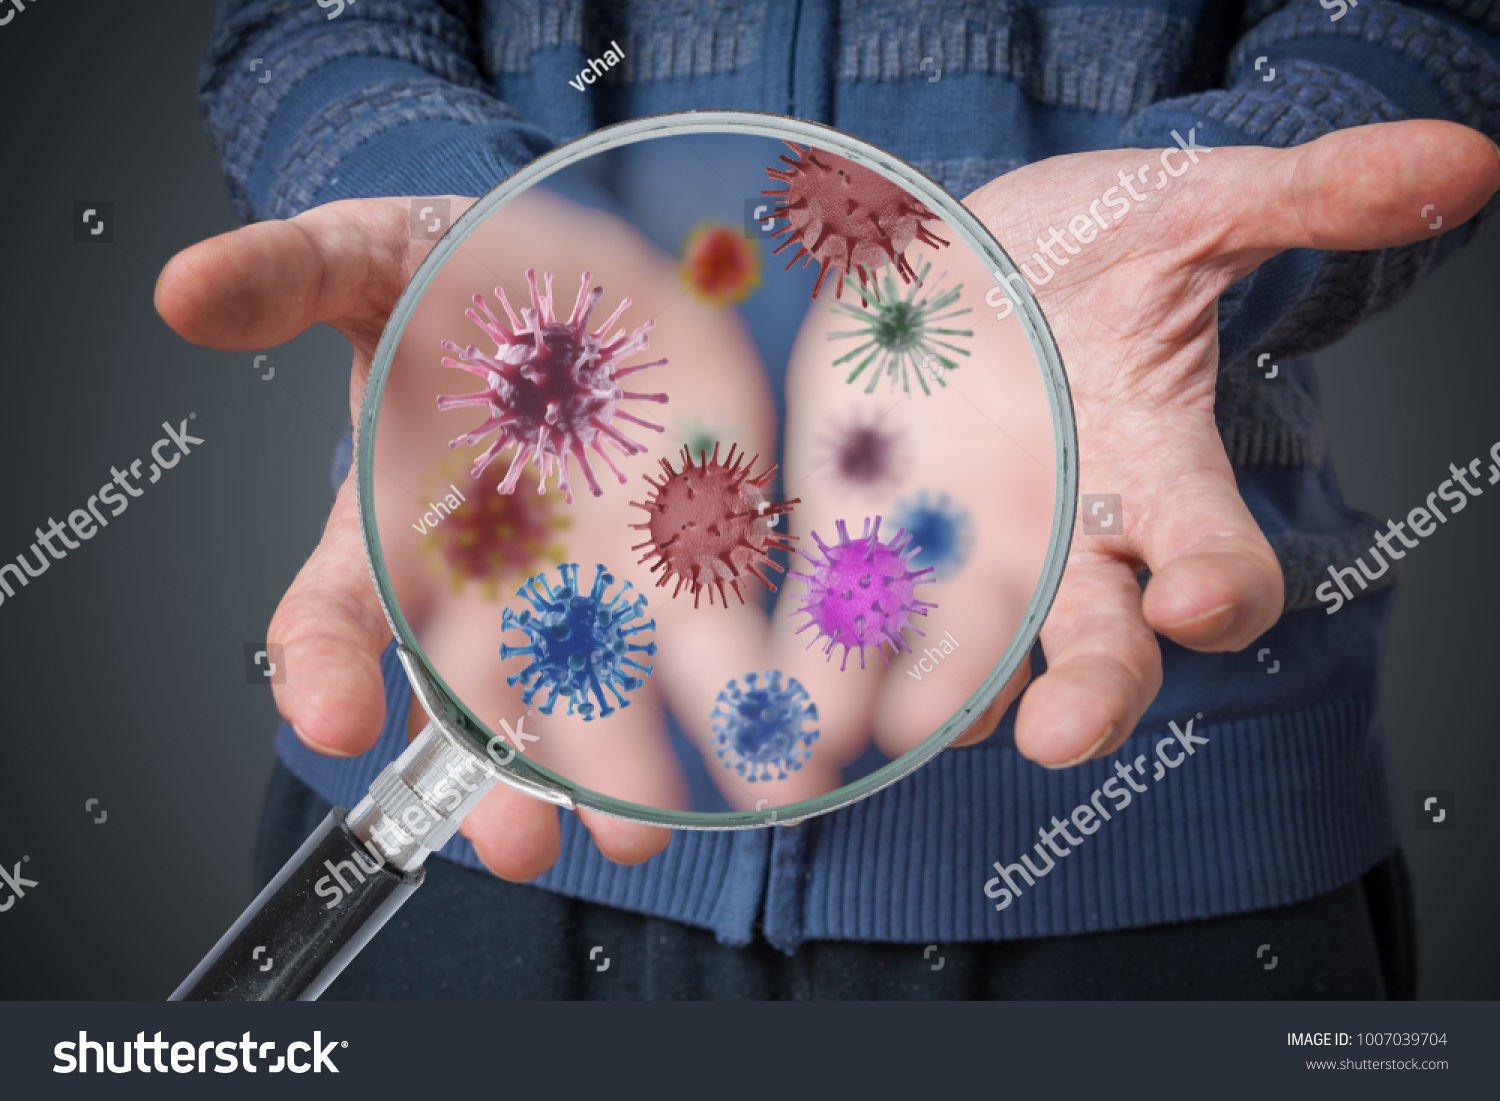 衛生のコンセプト 人間は 多くのウイルスや細菌で汚い手を見せている の写真素材 今すぐ編集